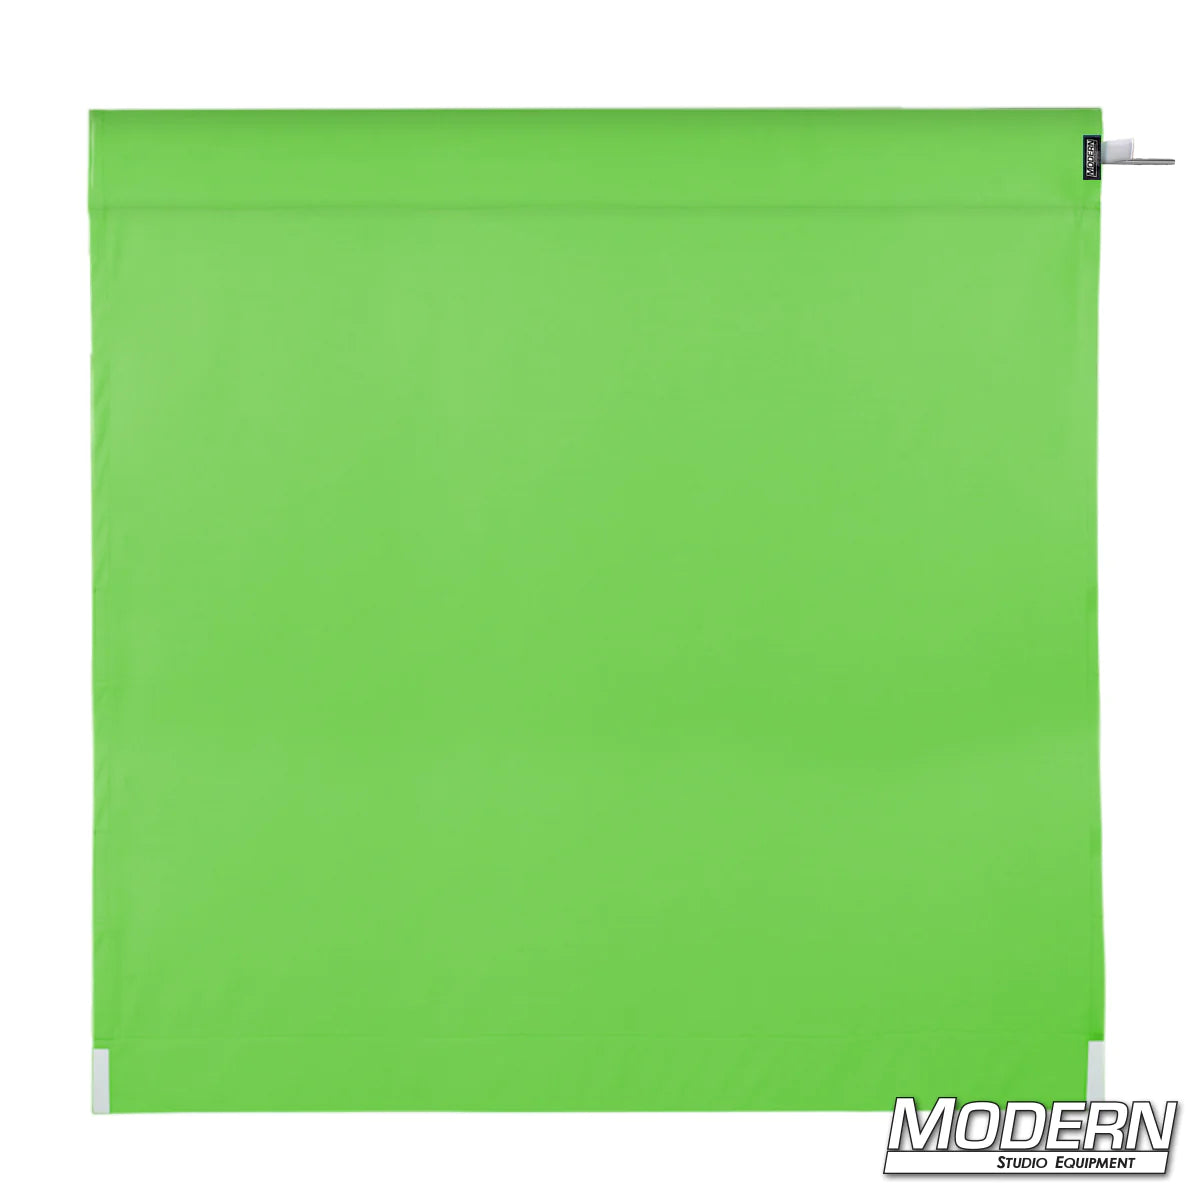 Wag Flag - Digital Green